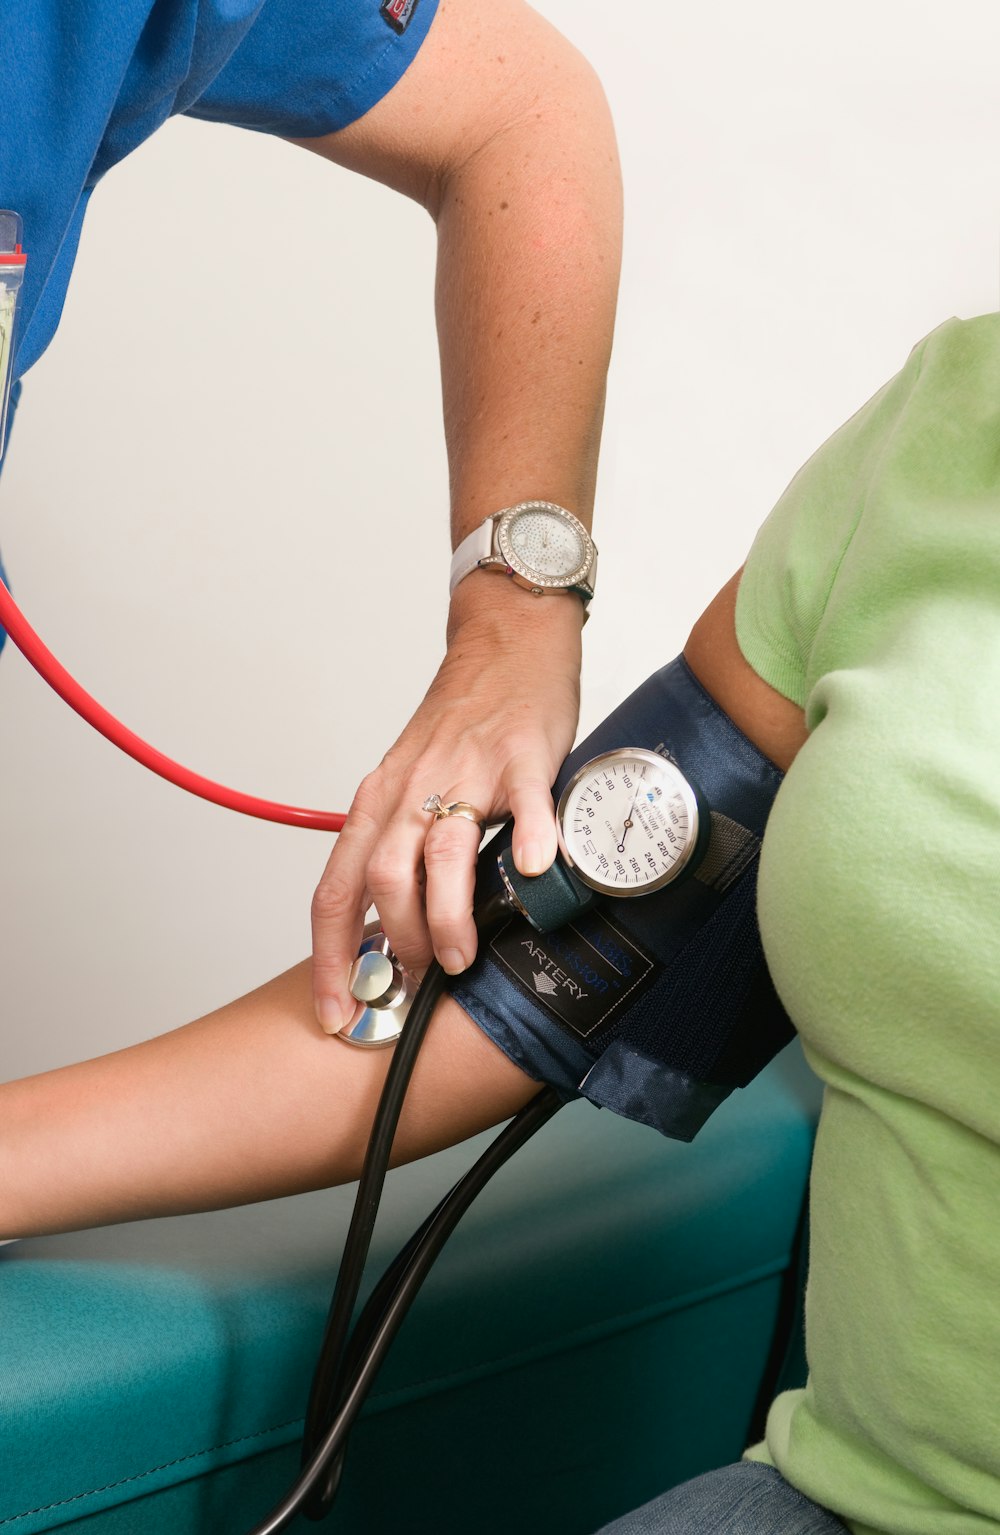 eine Person mit einem Blutdruckmessgerät am Arm